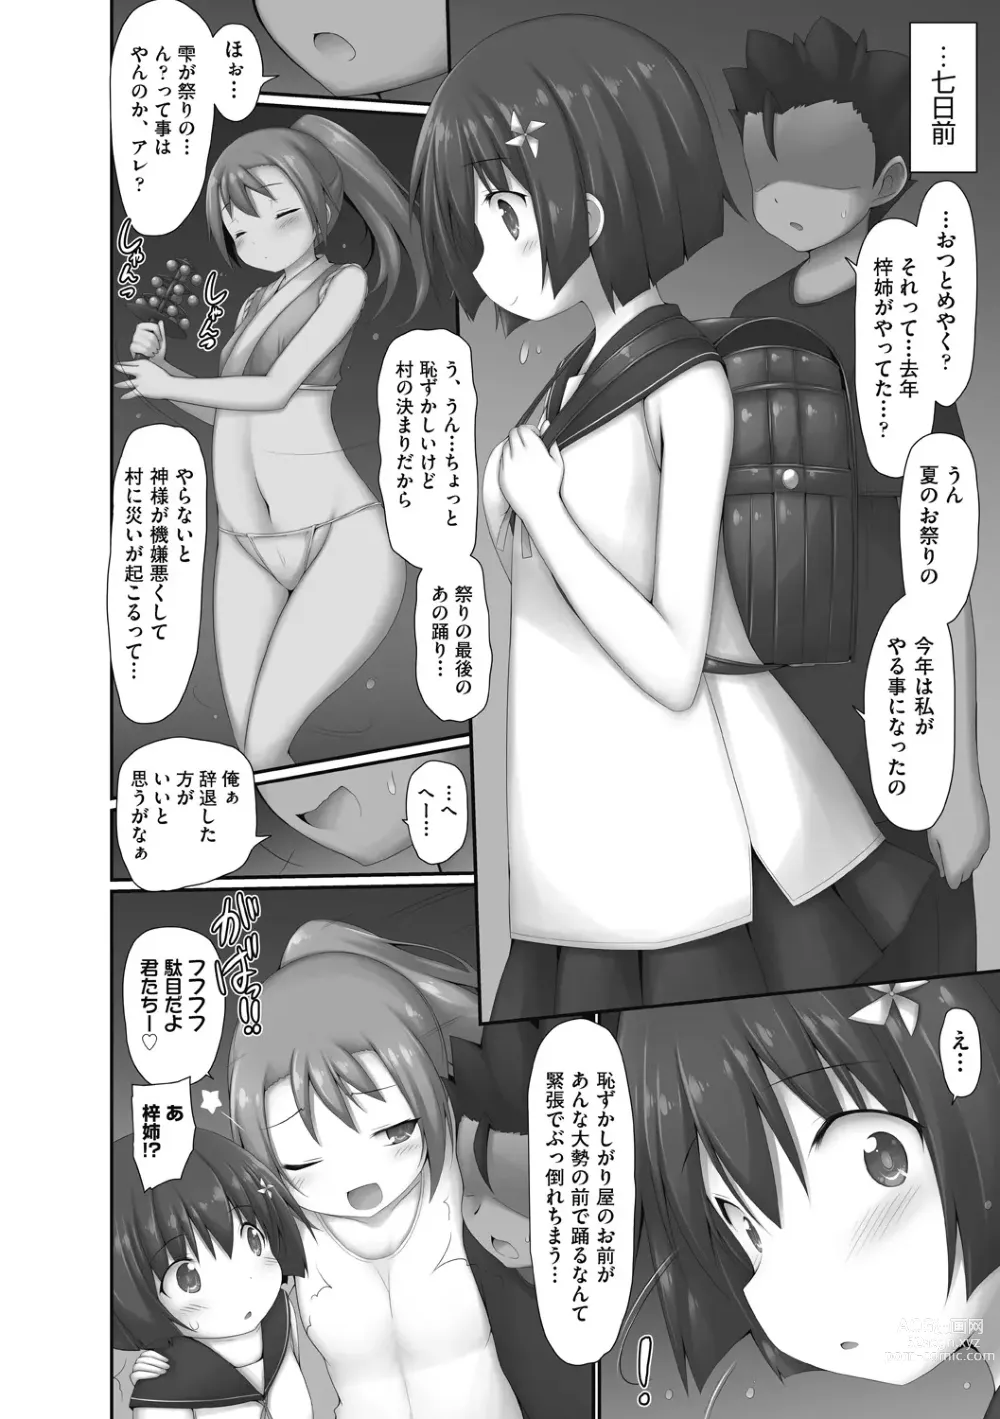 Page 6 of manga Sakaraenai no, Kono Hito ni wa